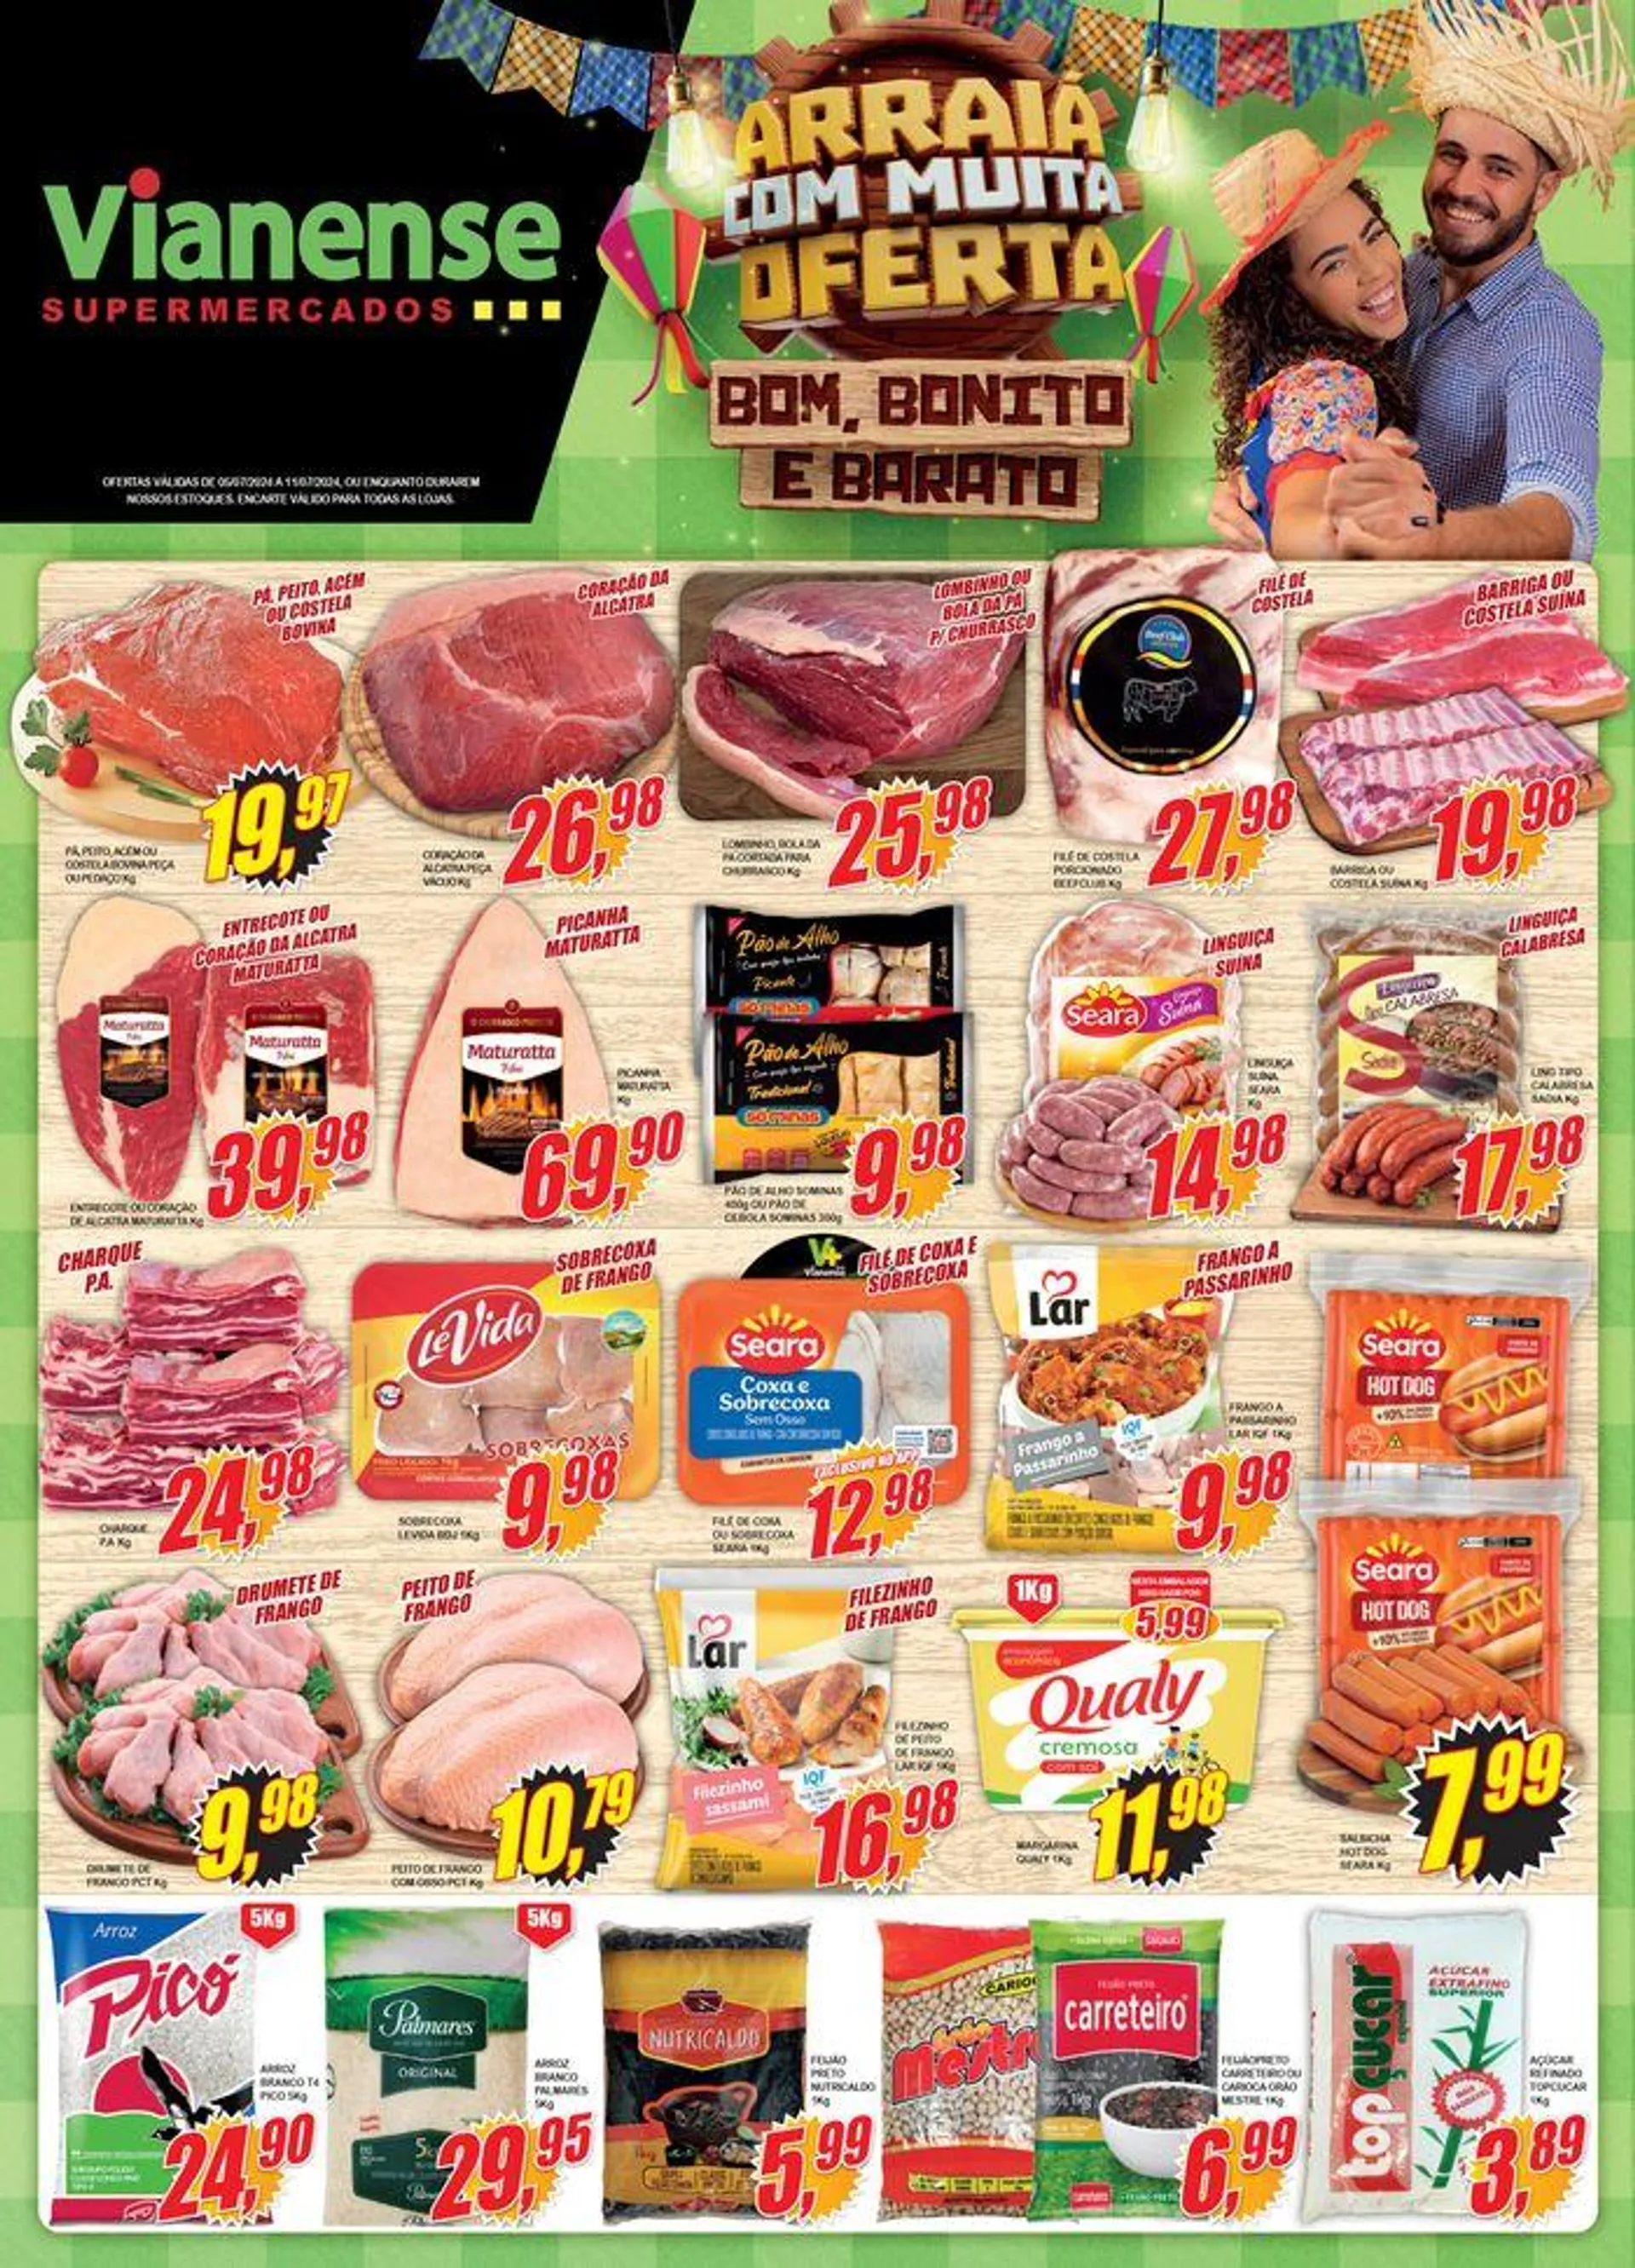 Oferta Vianense Supermercados - 1